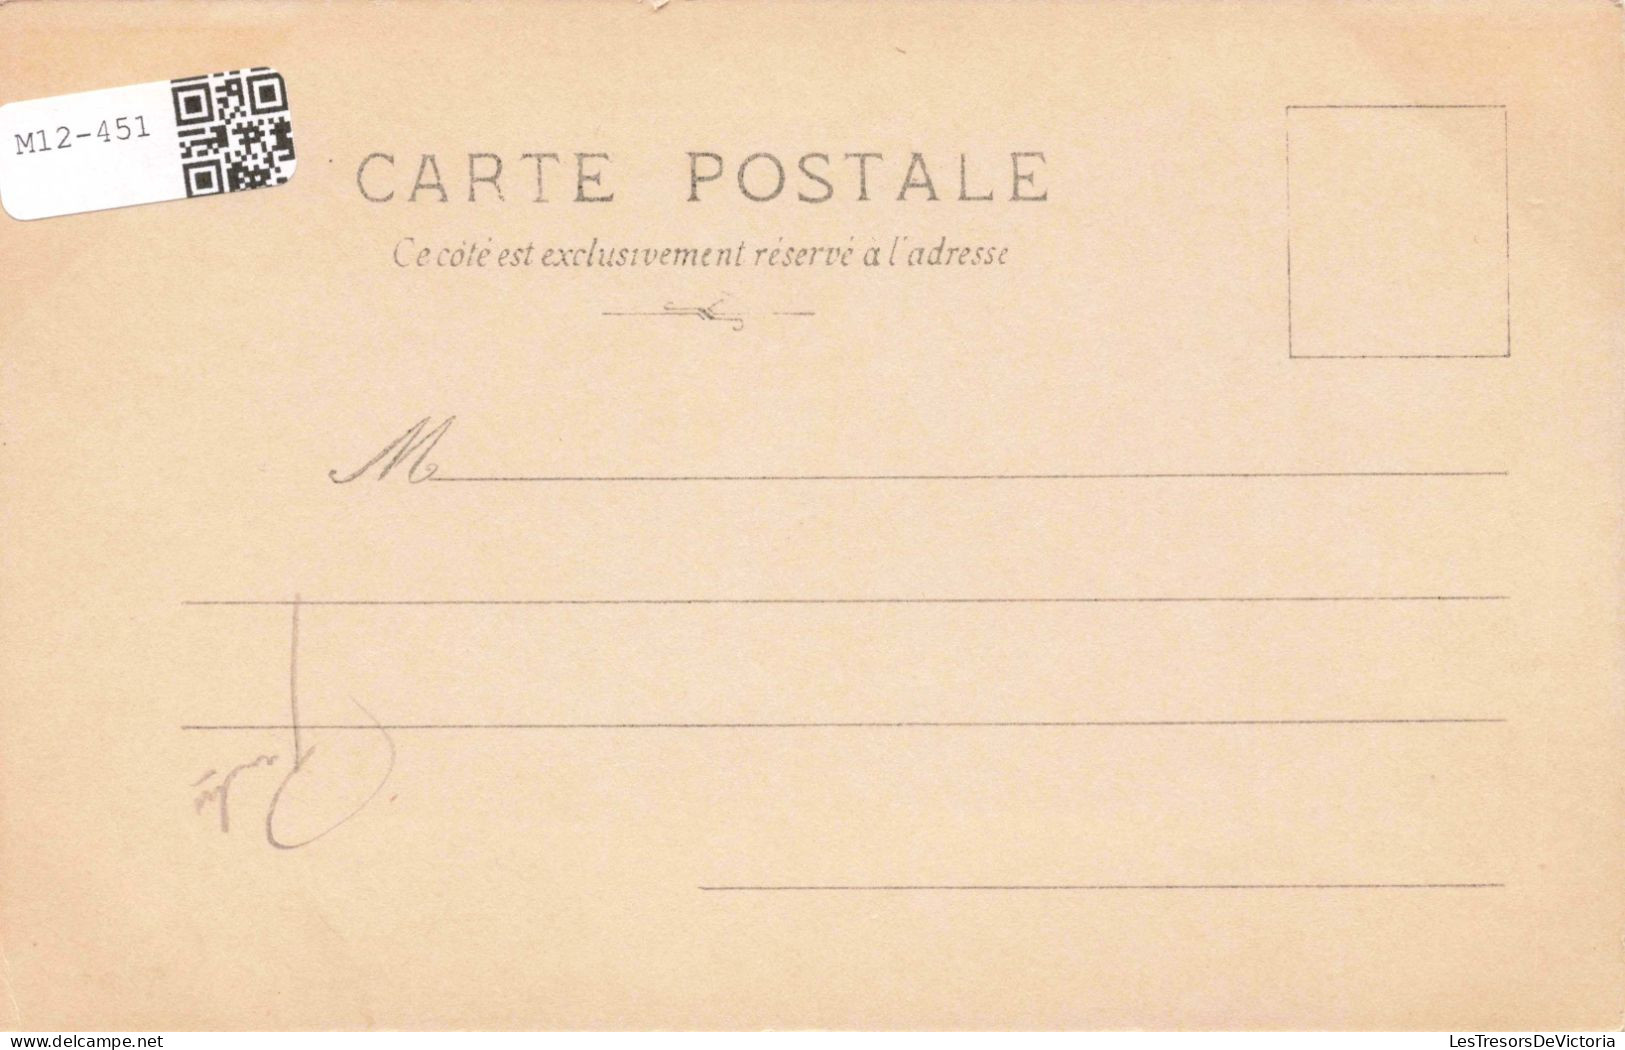 HISTOIRE - MN Ponce Camus - Napoléon A Osterode Accorde Des Grâces Aux Habitants - Carte Postale Ancienne - Histoire